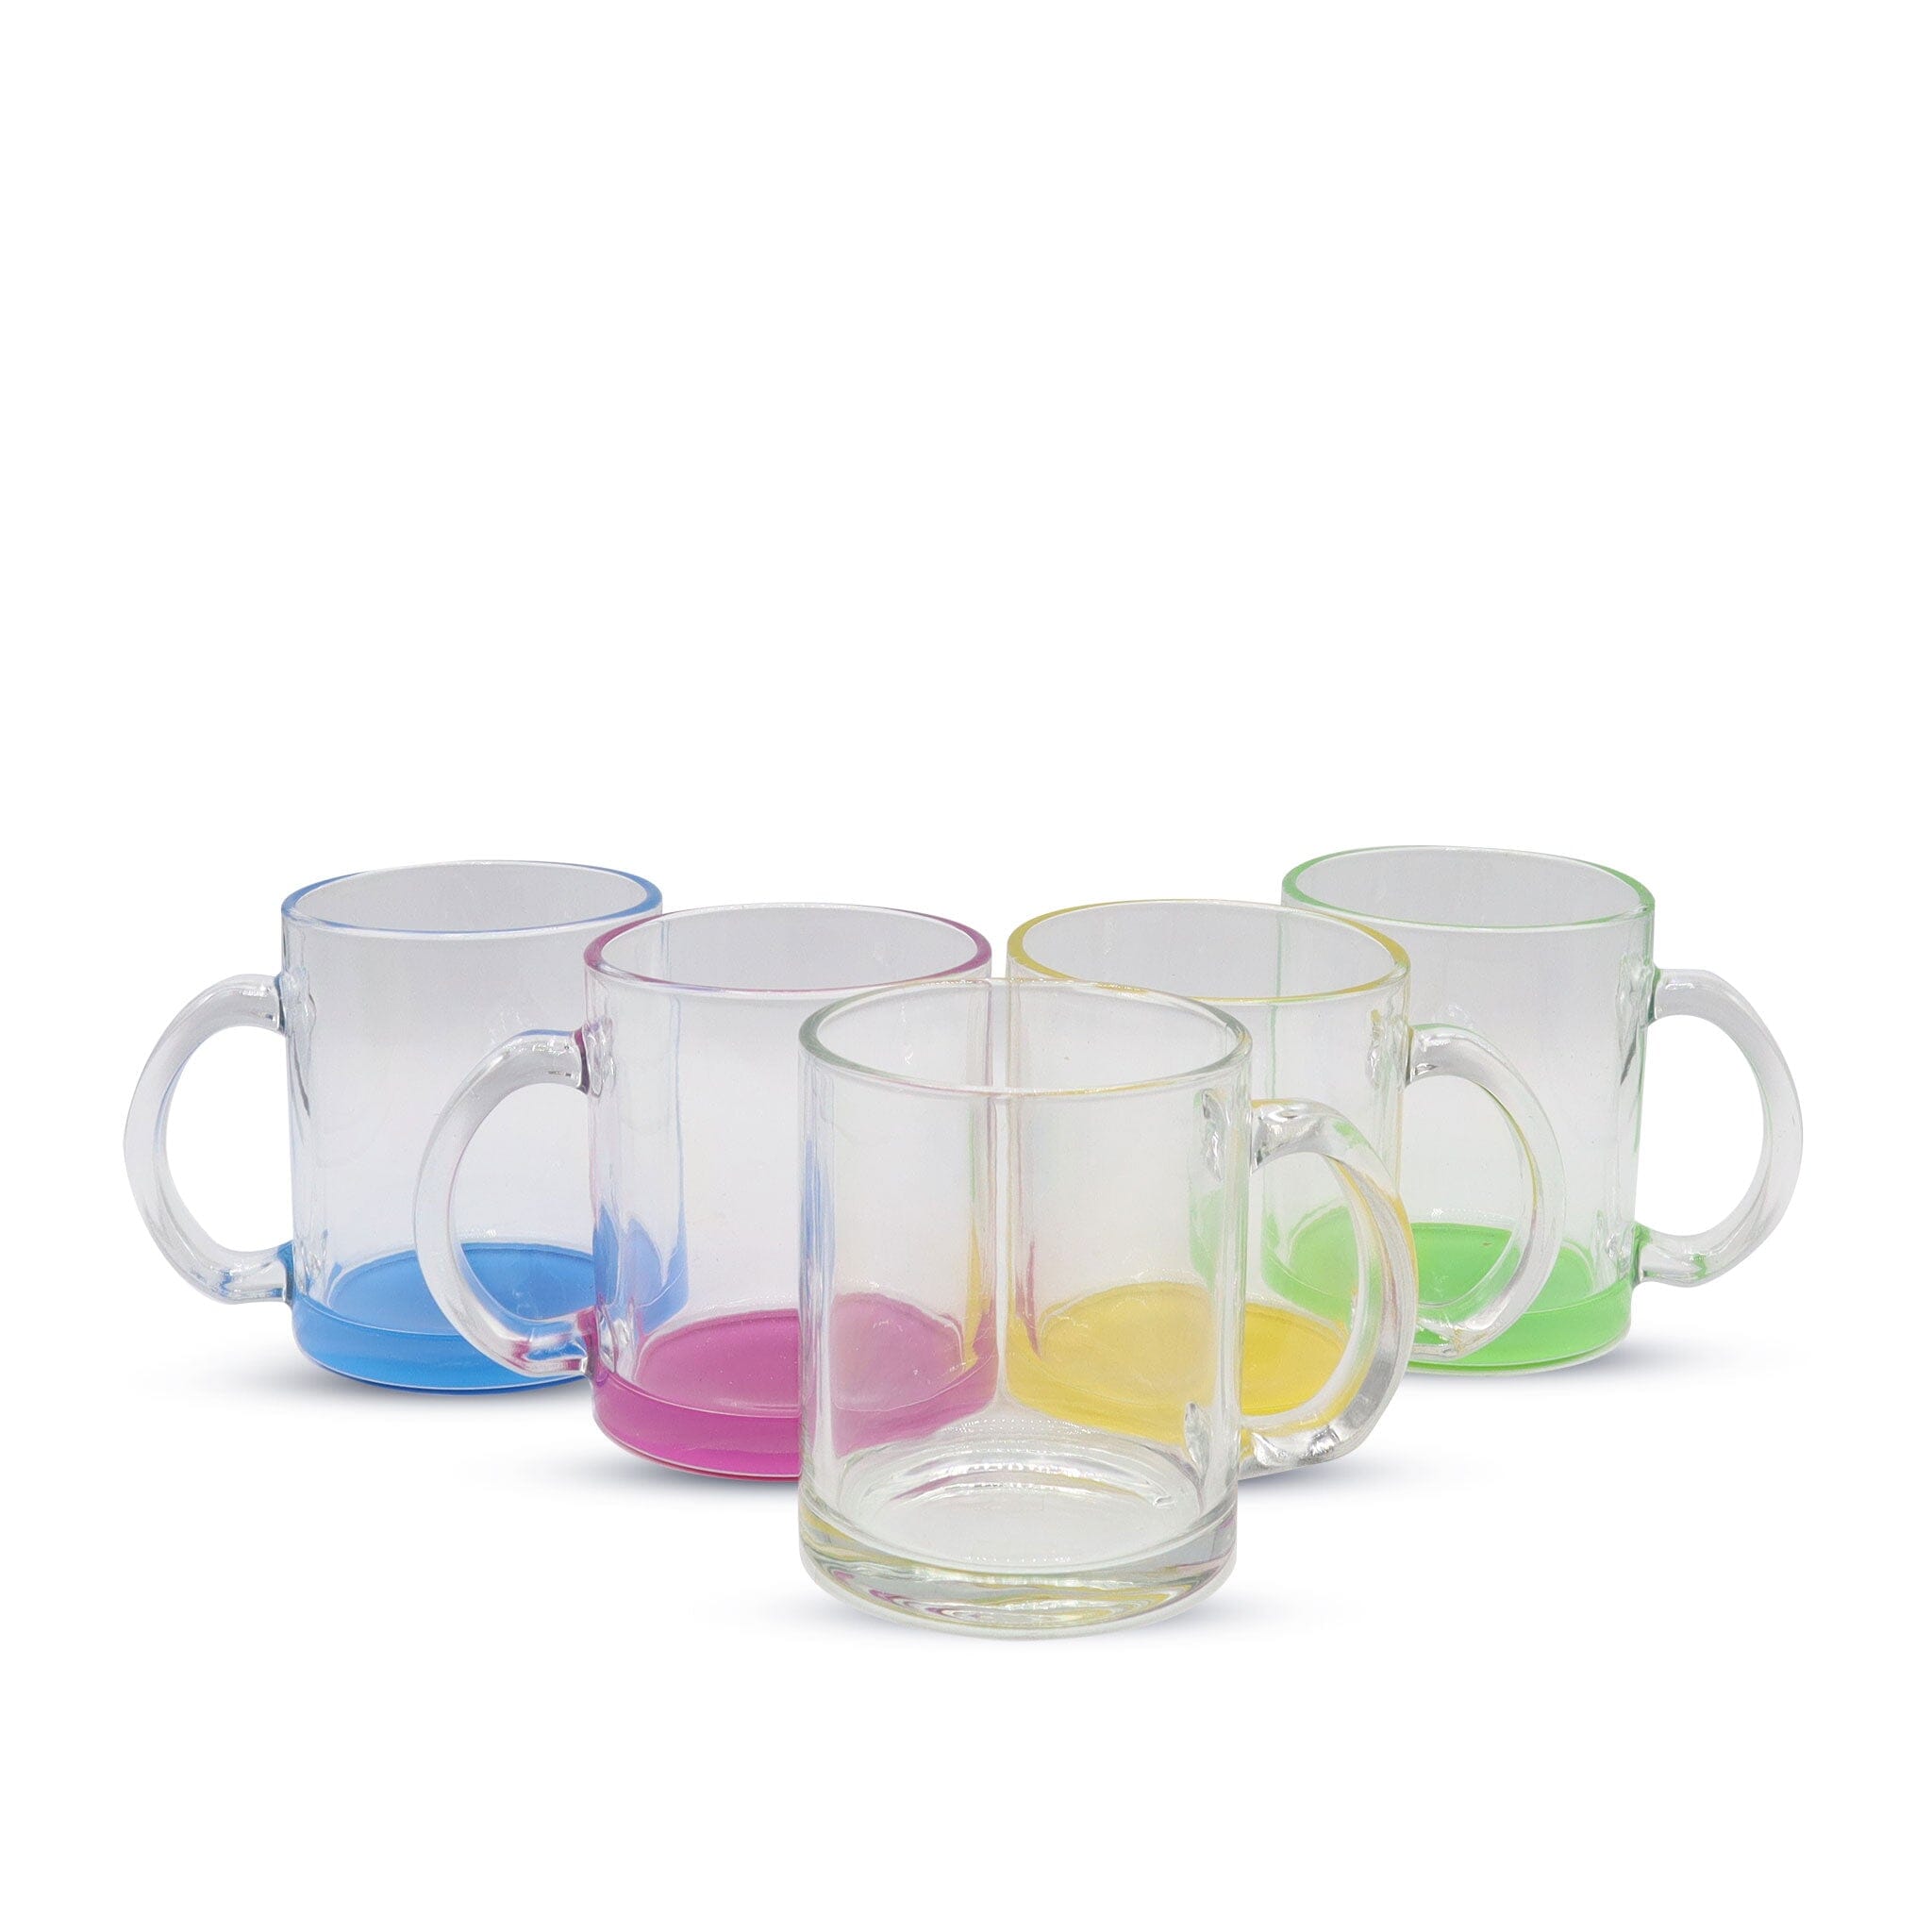 https://www.kupresso.com/cdn/shop/products/11oz-sublimation-glass-camper-mug-clear-kupresso-796031.jpg?v=1684886418